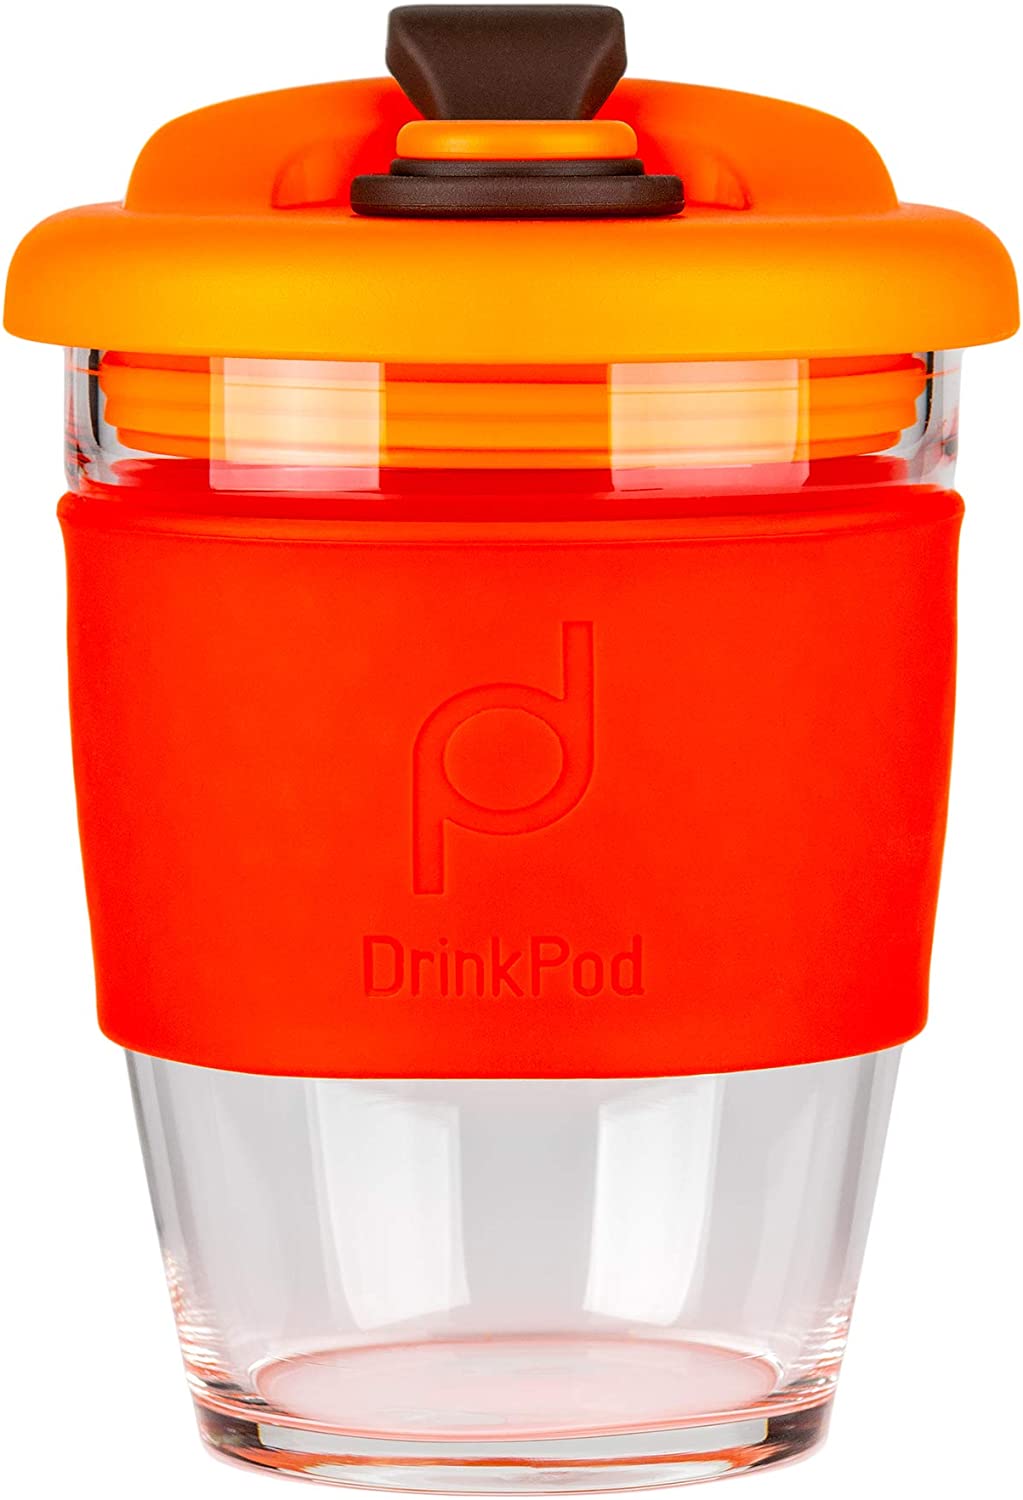 DrinkPod Reusable BPA Free 340ml 12oz Glass Coffee Mug Travel Mug - VOLCANO, RED